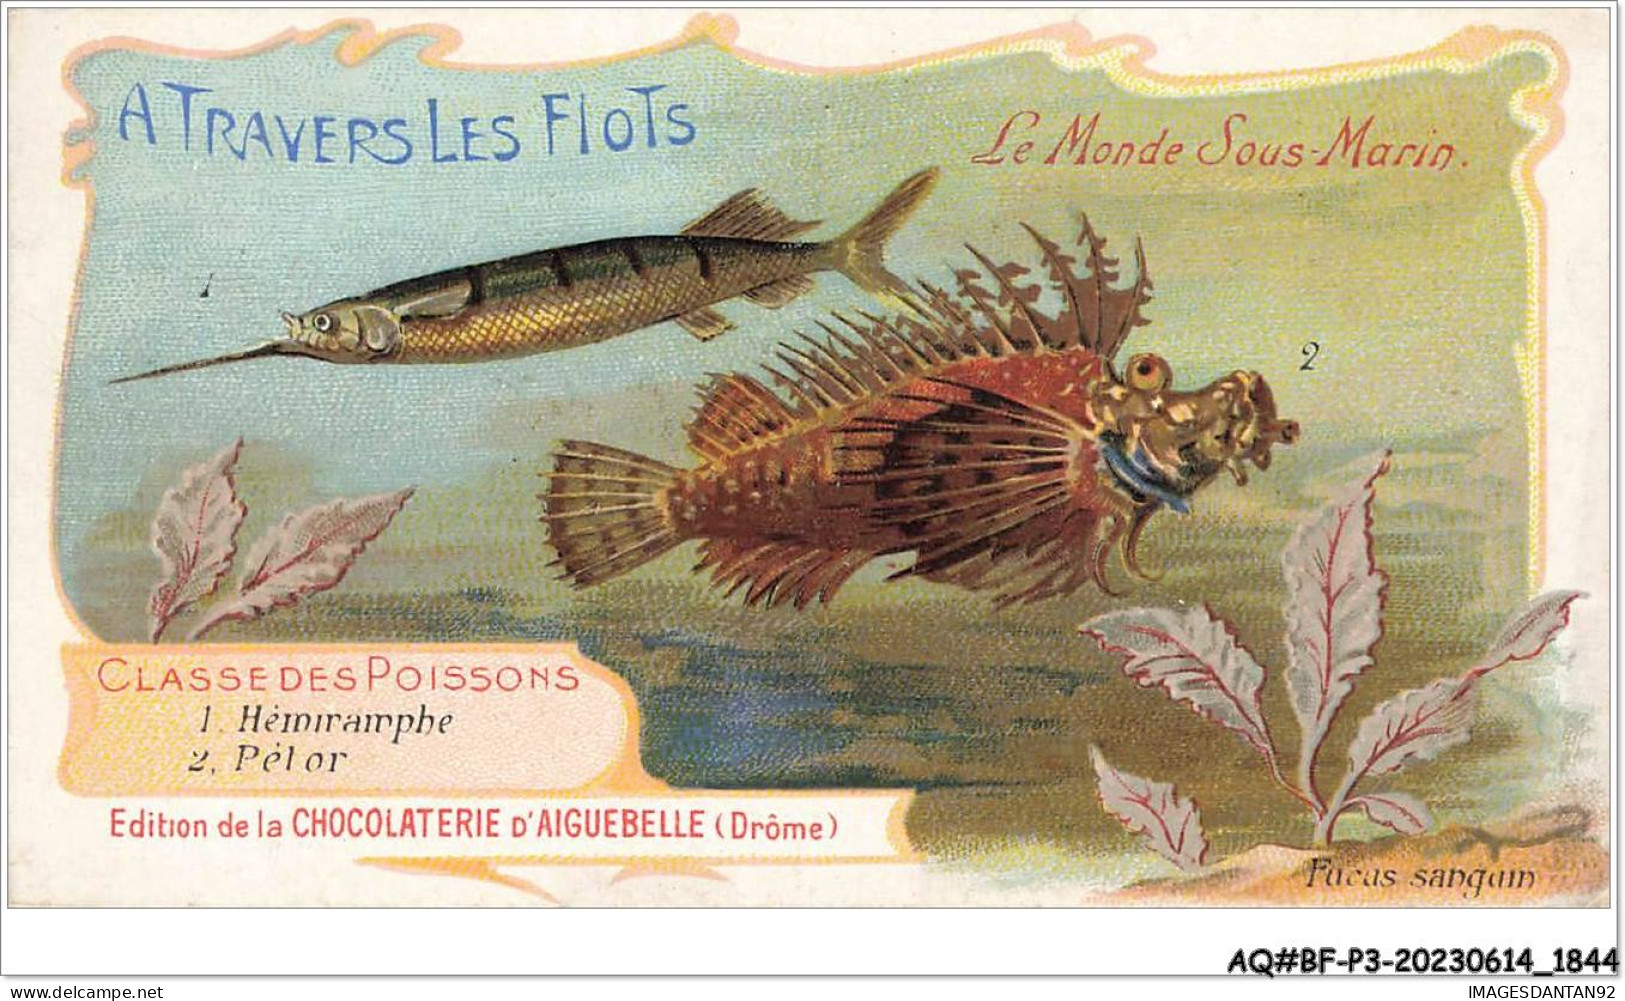 AQ#BFP3-CHROMOS-0920 - CHOCOLAT D'AIGUEBELLE - Le Monde Sous Marin - Classe Des Poissons - Aiguebelle